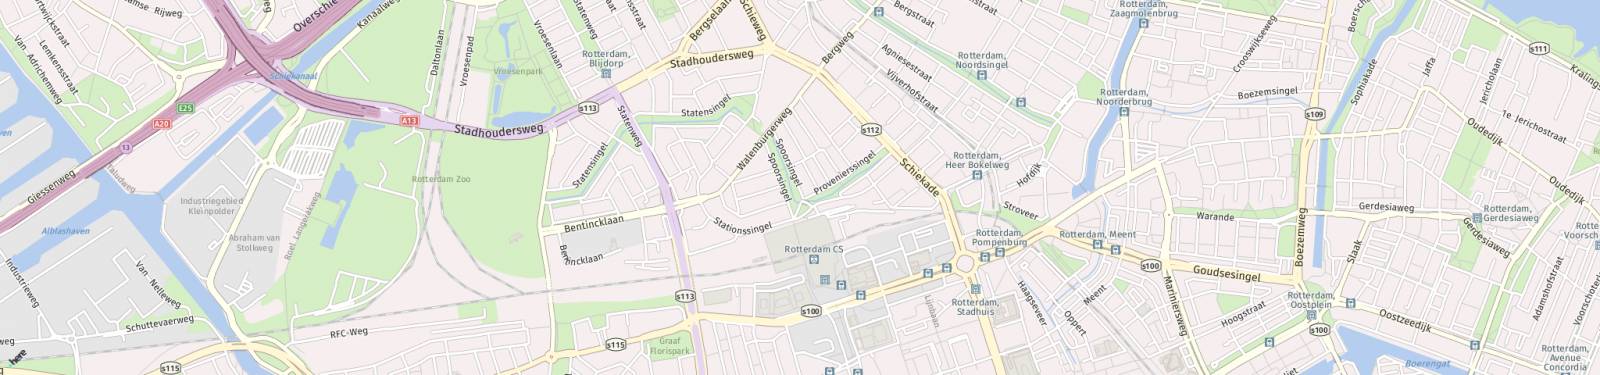 Kaart met locatie Appartement Spoorsingel